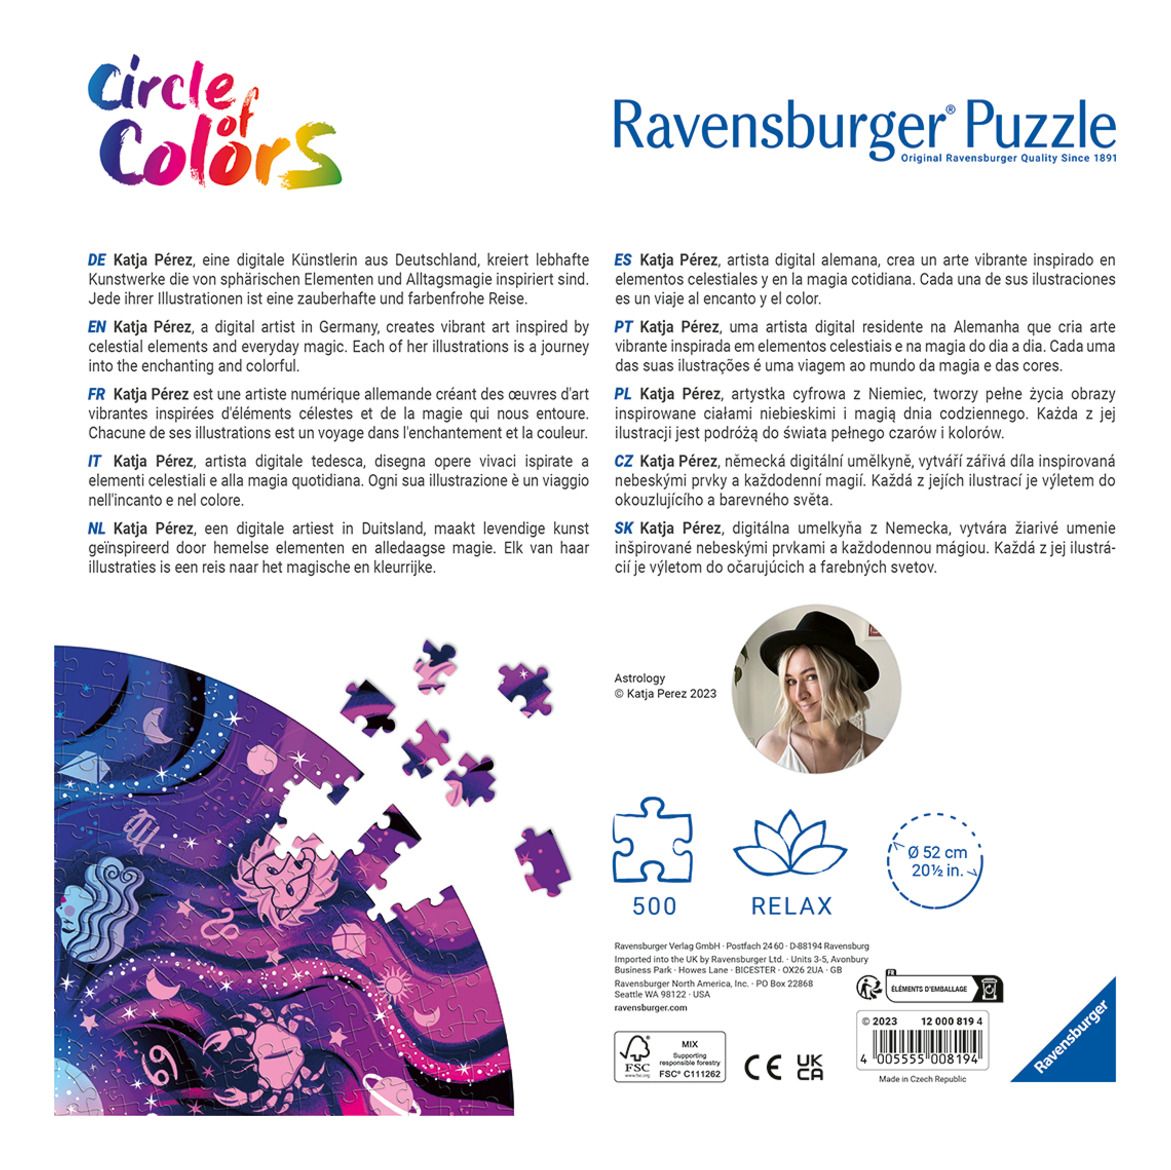 Astrology Circular 500 Piece Jigsaw Puzzle Ravensburger